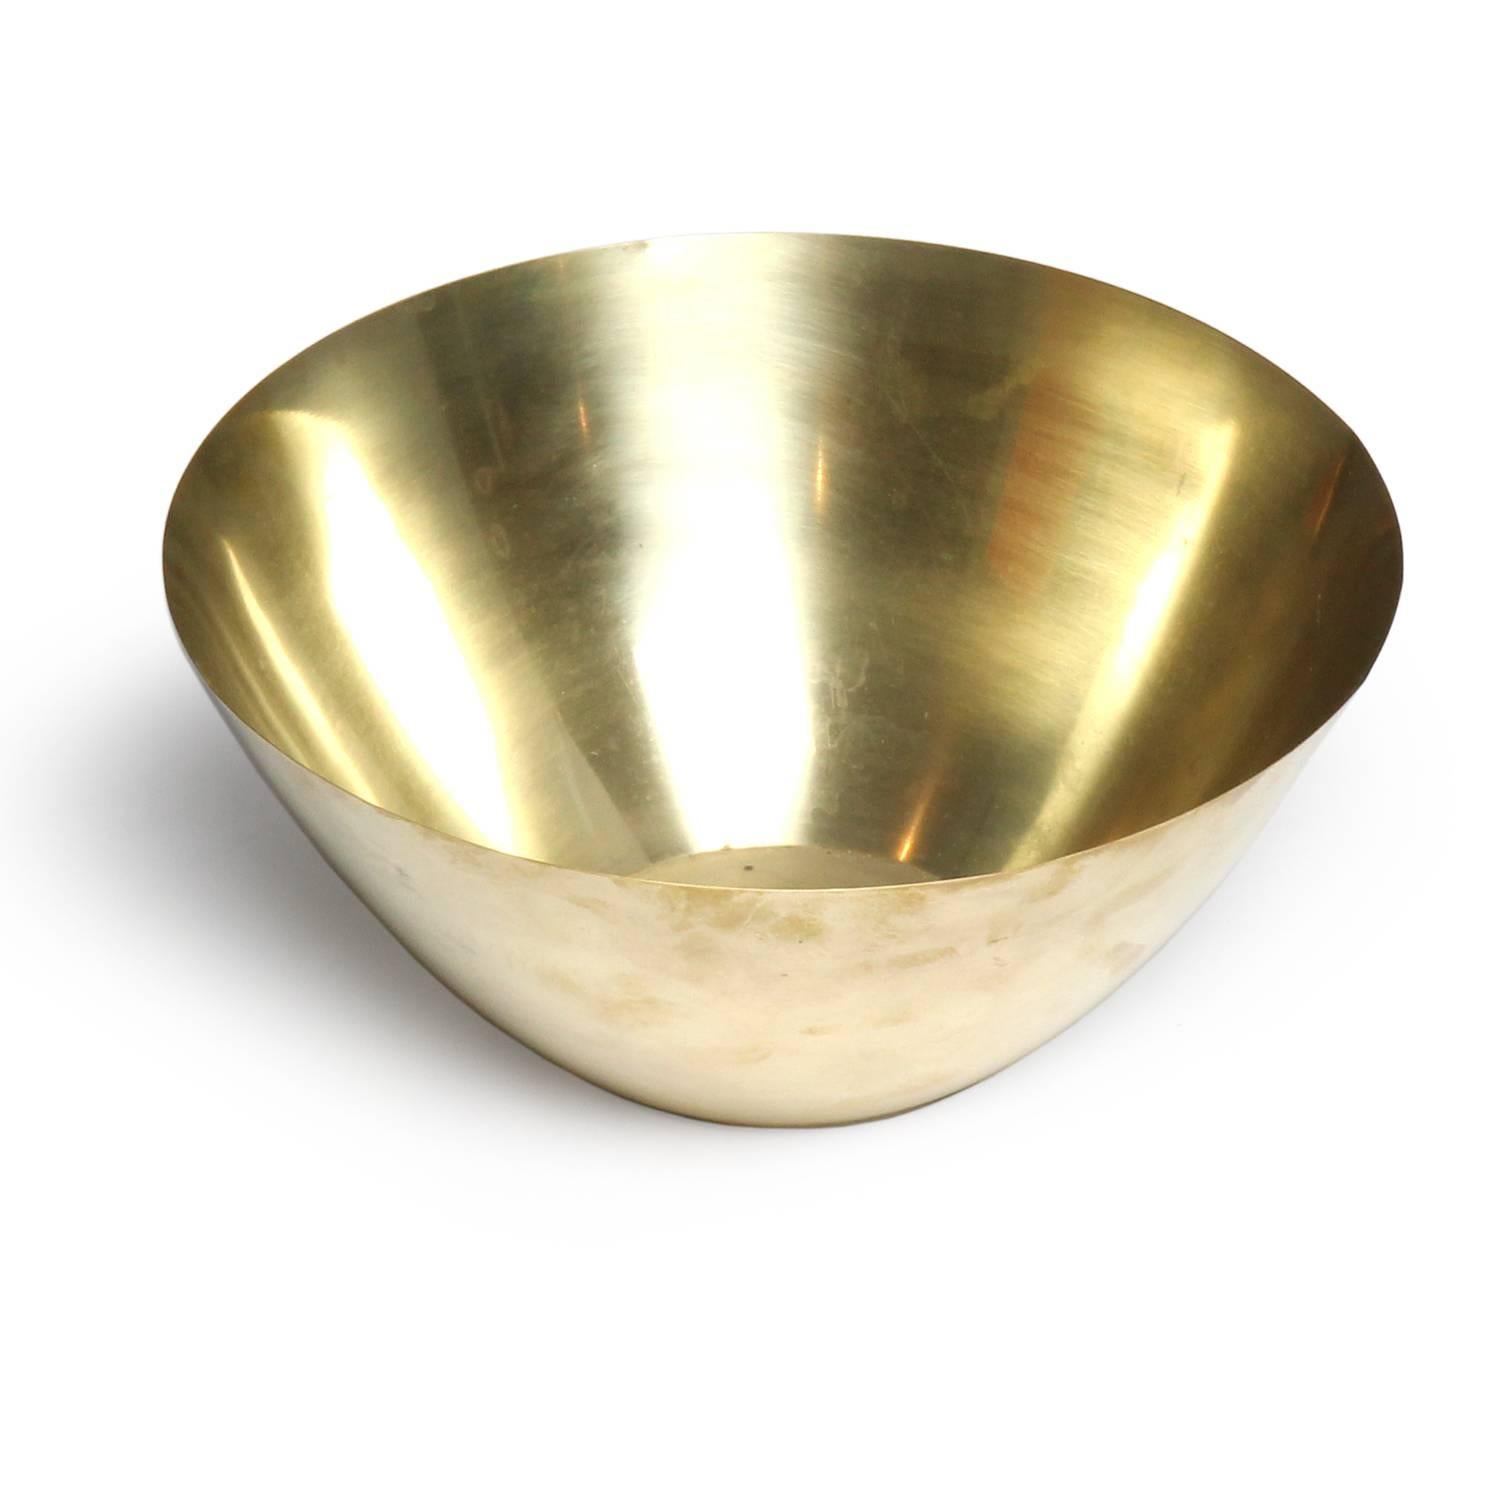 Scandinavian Modern Turned Brass Bowl by Arne Jacobsen for Stelton